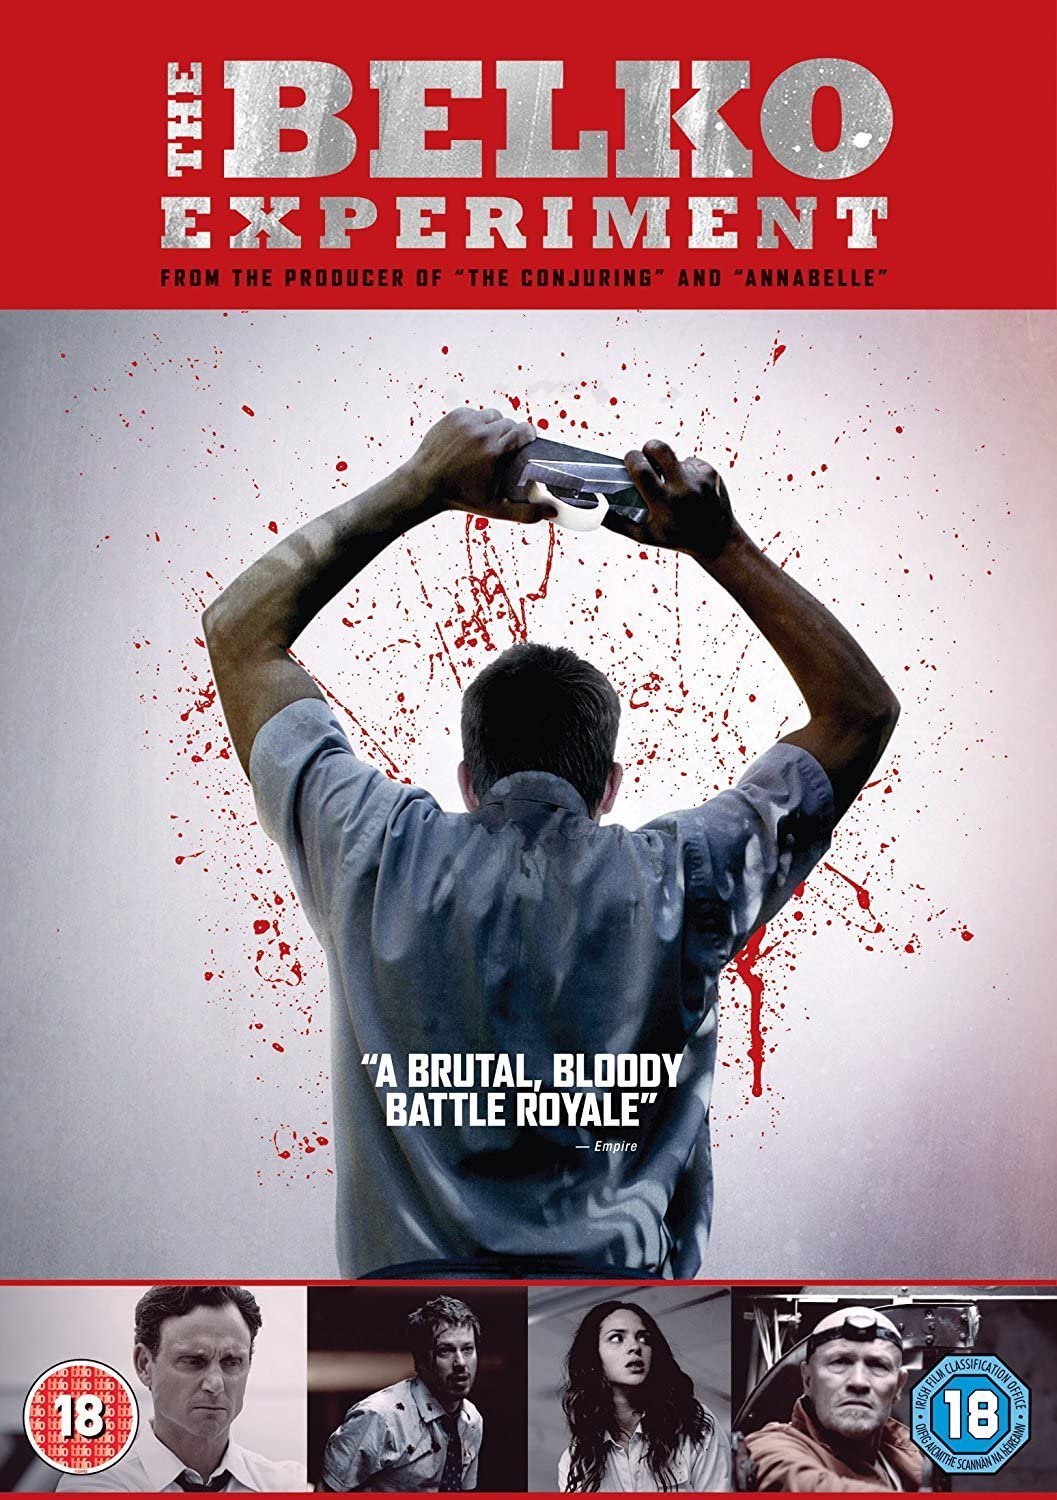 The Belko Experiment [2017] - Horror/Thriller [DVD]